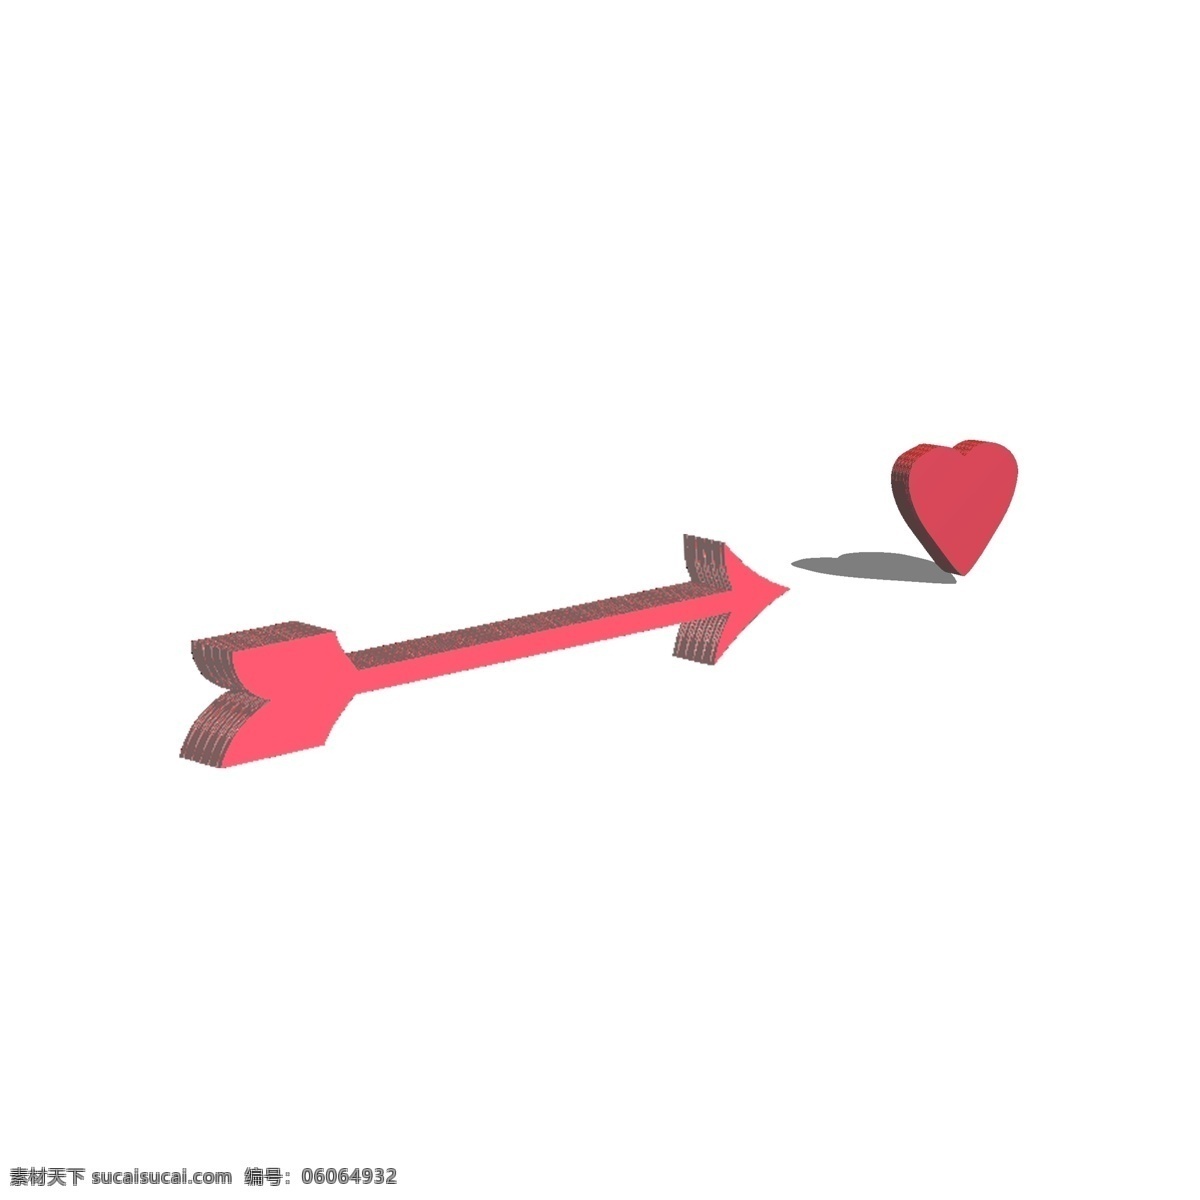 立体 红色 箭头 标志 3d箭头 装饰 指示箭头 标识 彩色箭头 立体标志 指向性标识 箭头图案 爱心